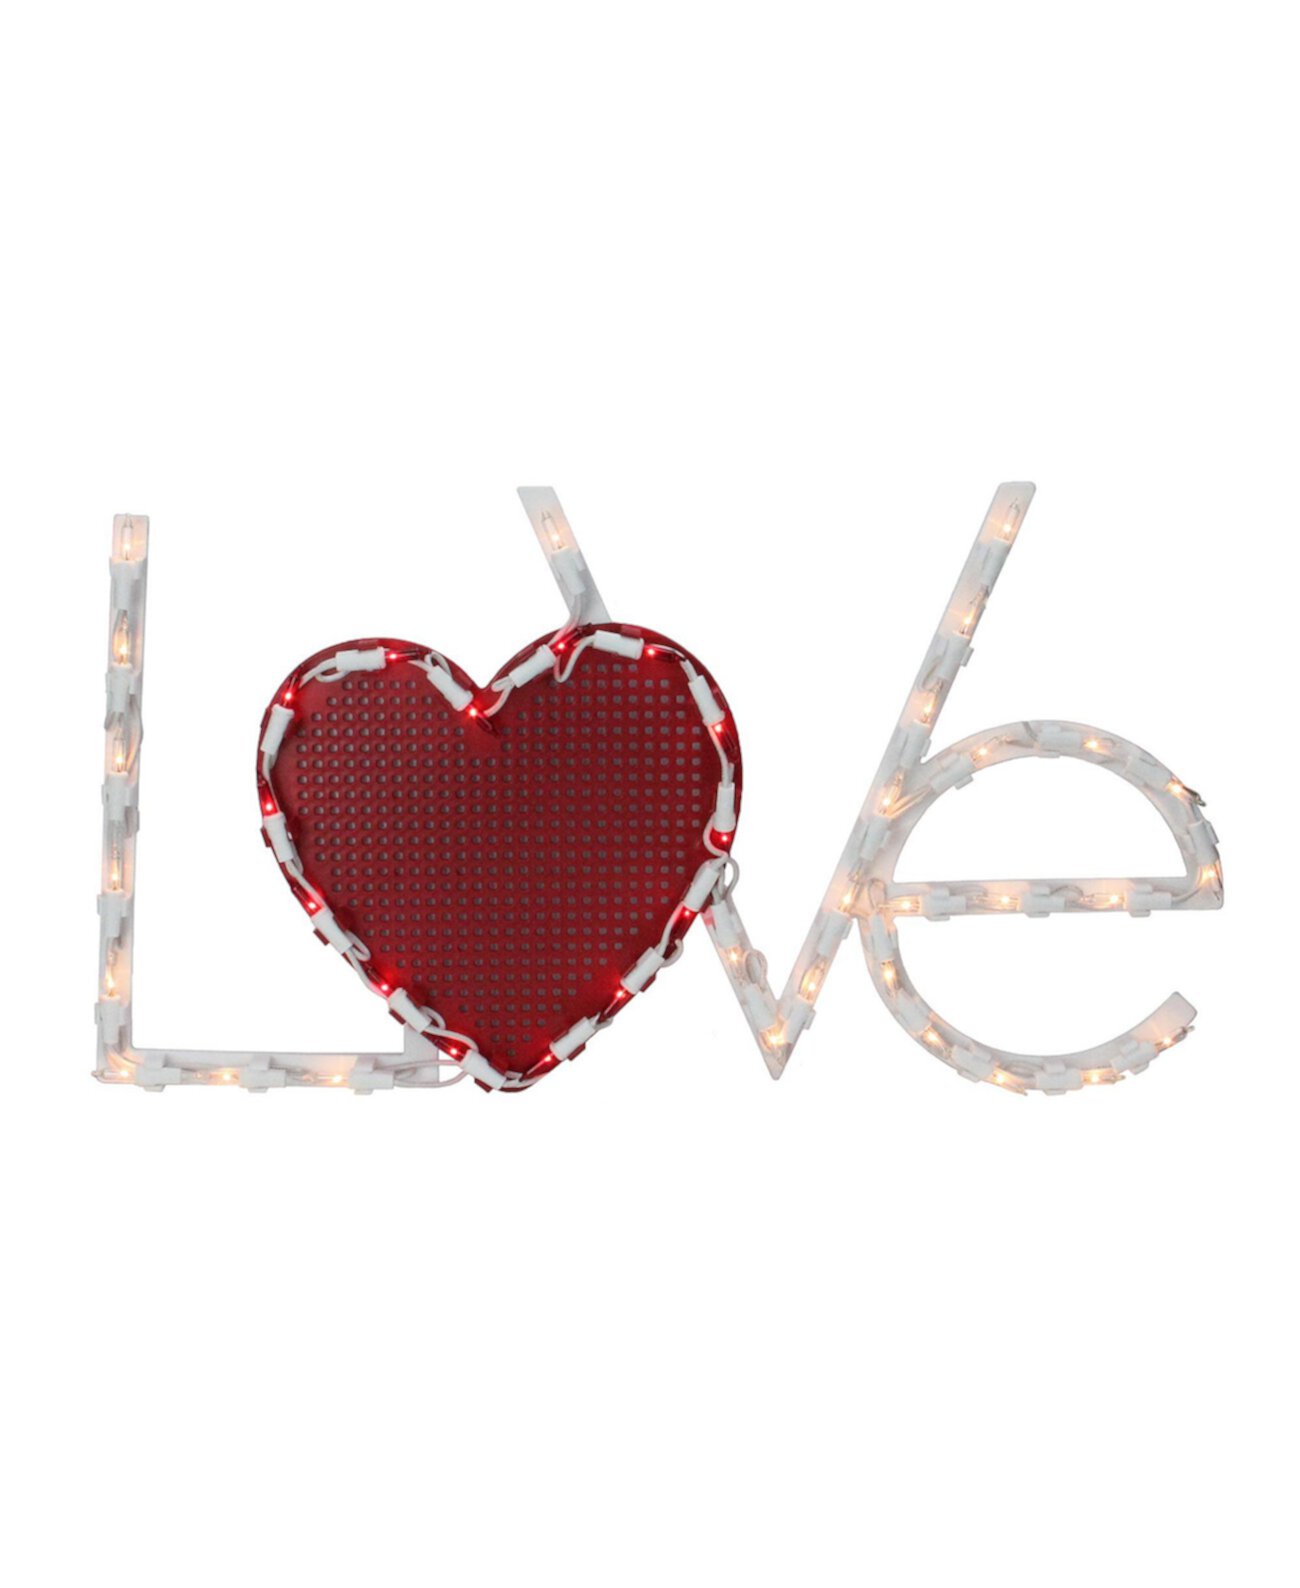 17-дюймовая подсветка "Любовь" с сердечком, украшение в виде силуэта окна ко Дню святого Валентина Northlight